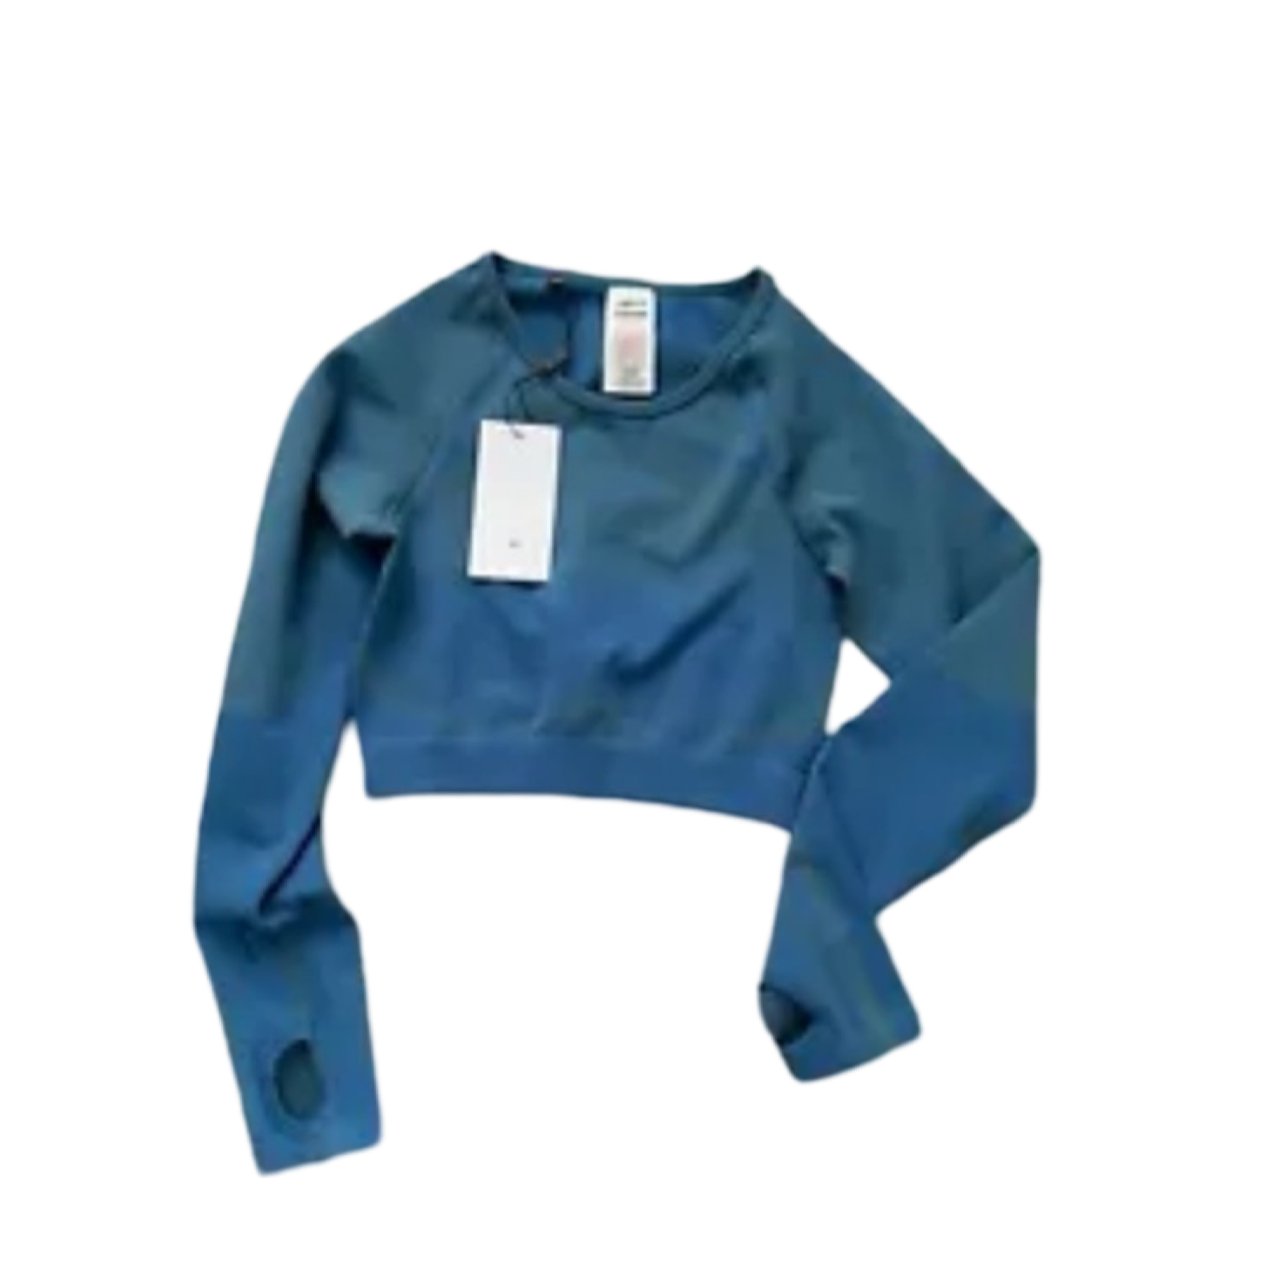 Gymshark Vital Seamless Crop Top in Blue - Soul and Sense Streetwear